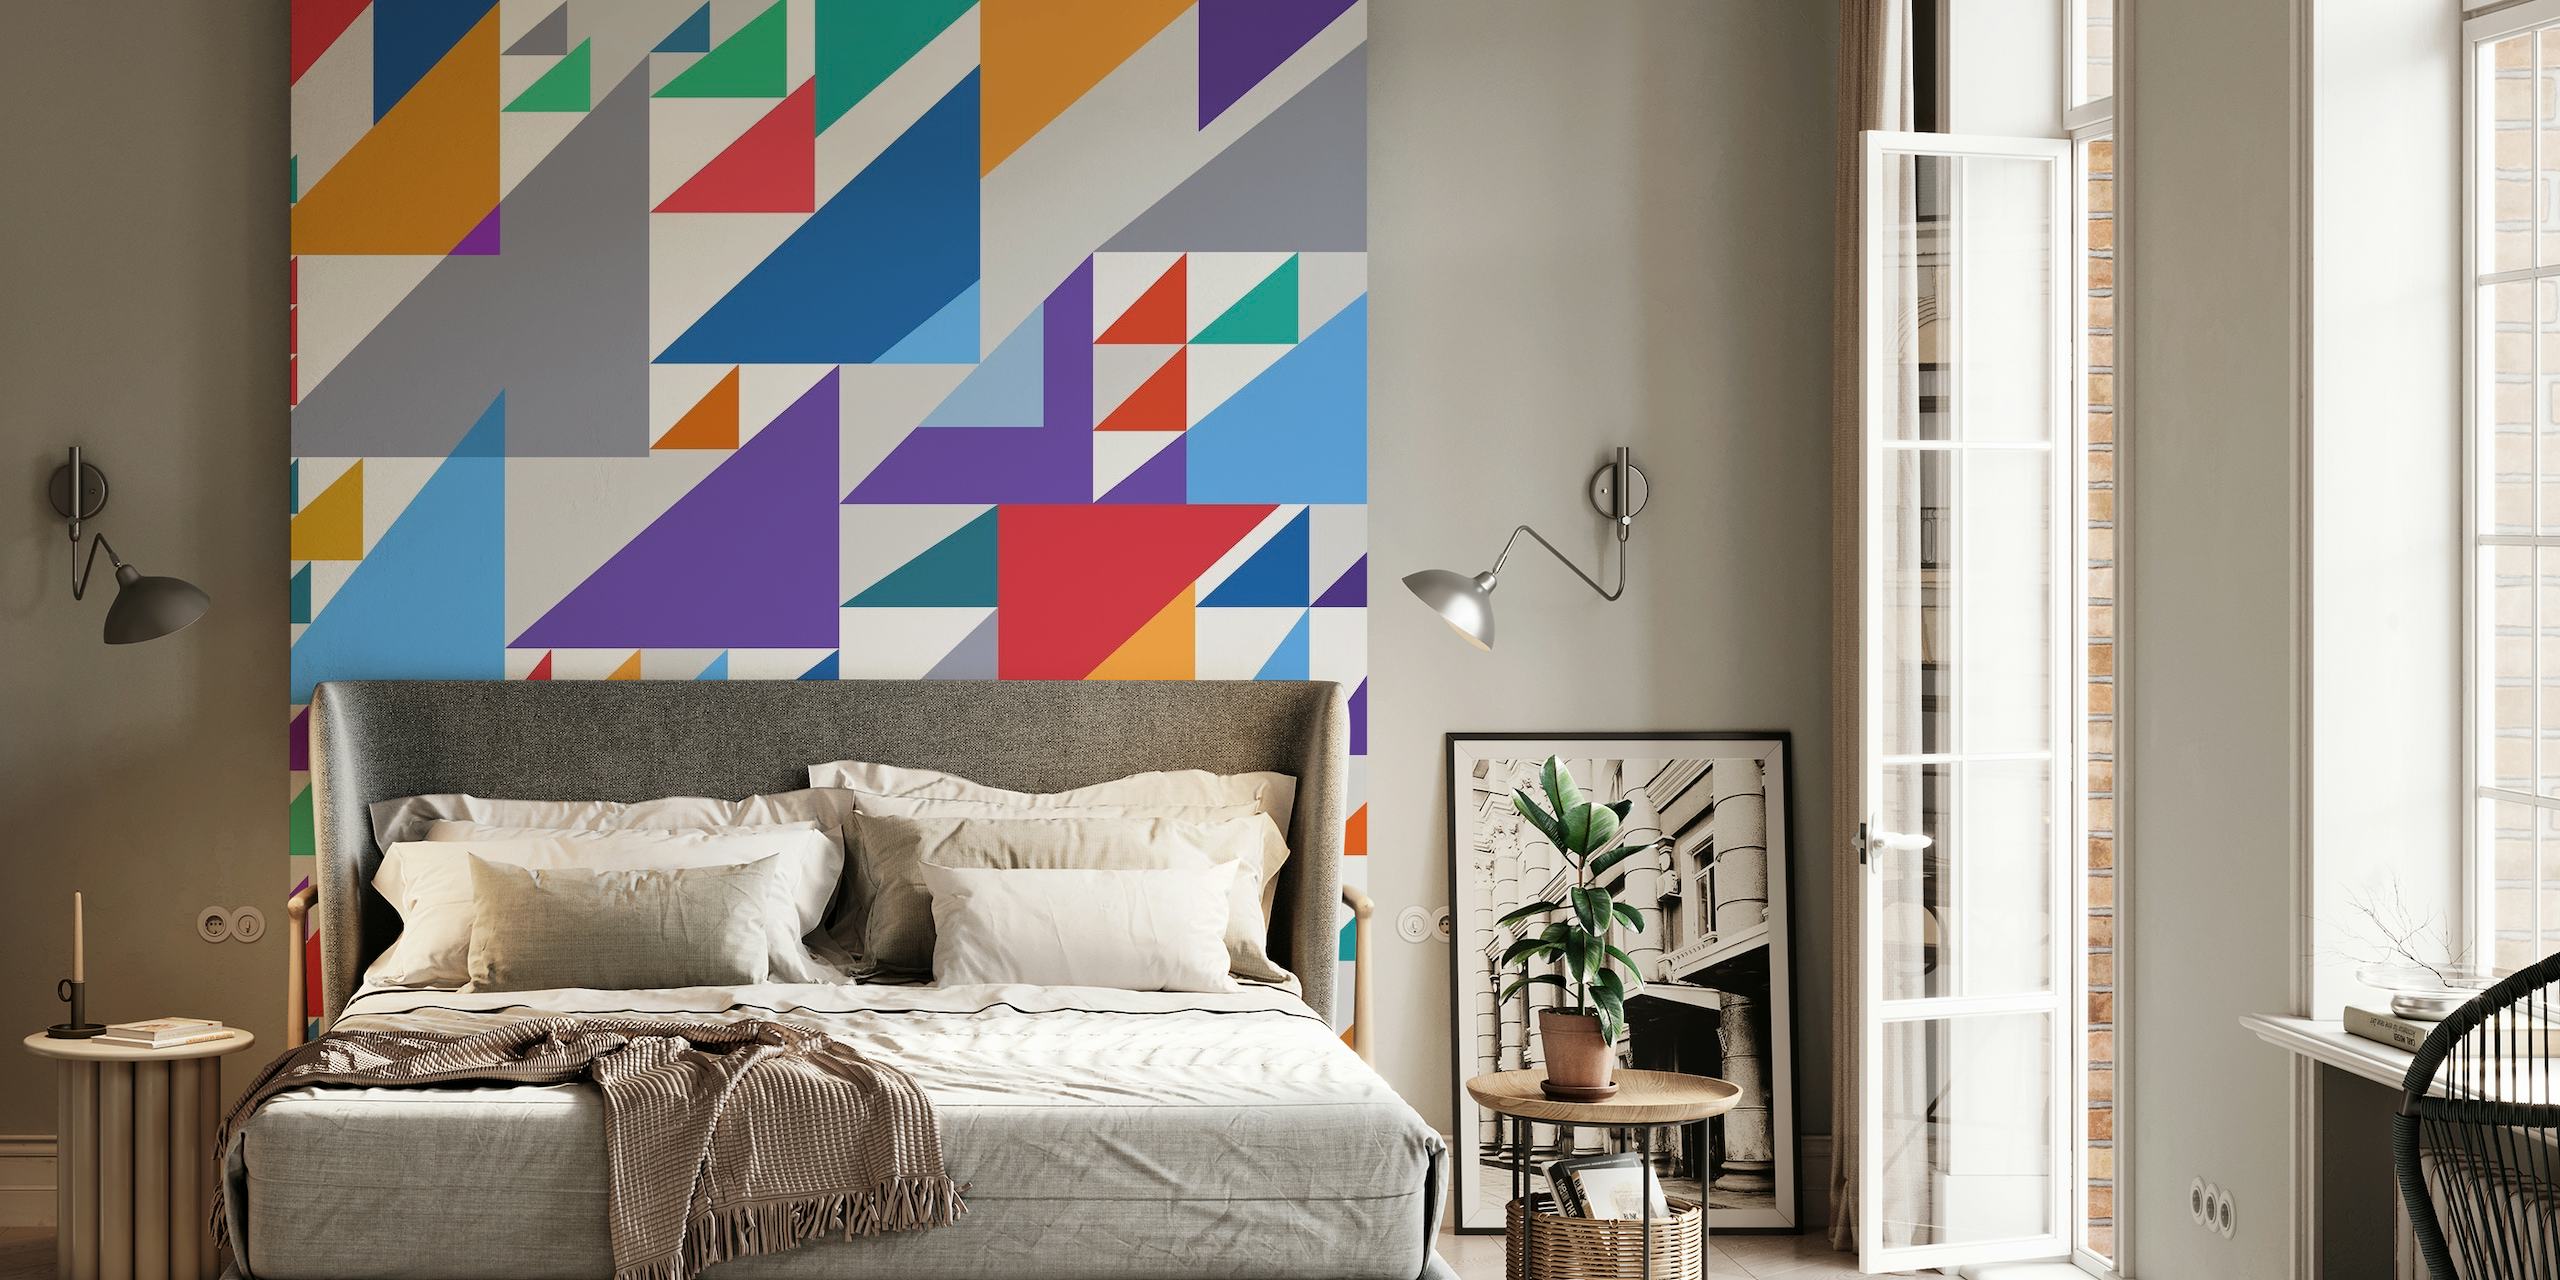 Fotomural vinílico de parede colorido com vários triângulos